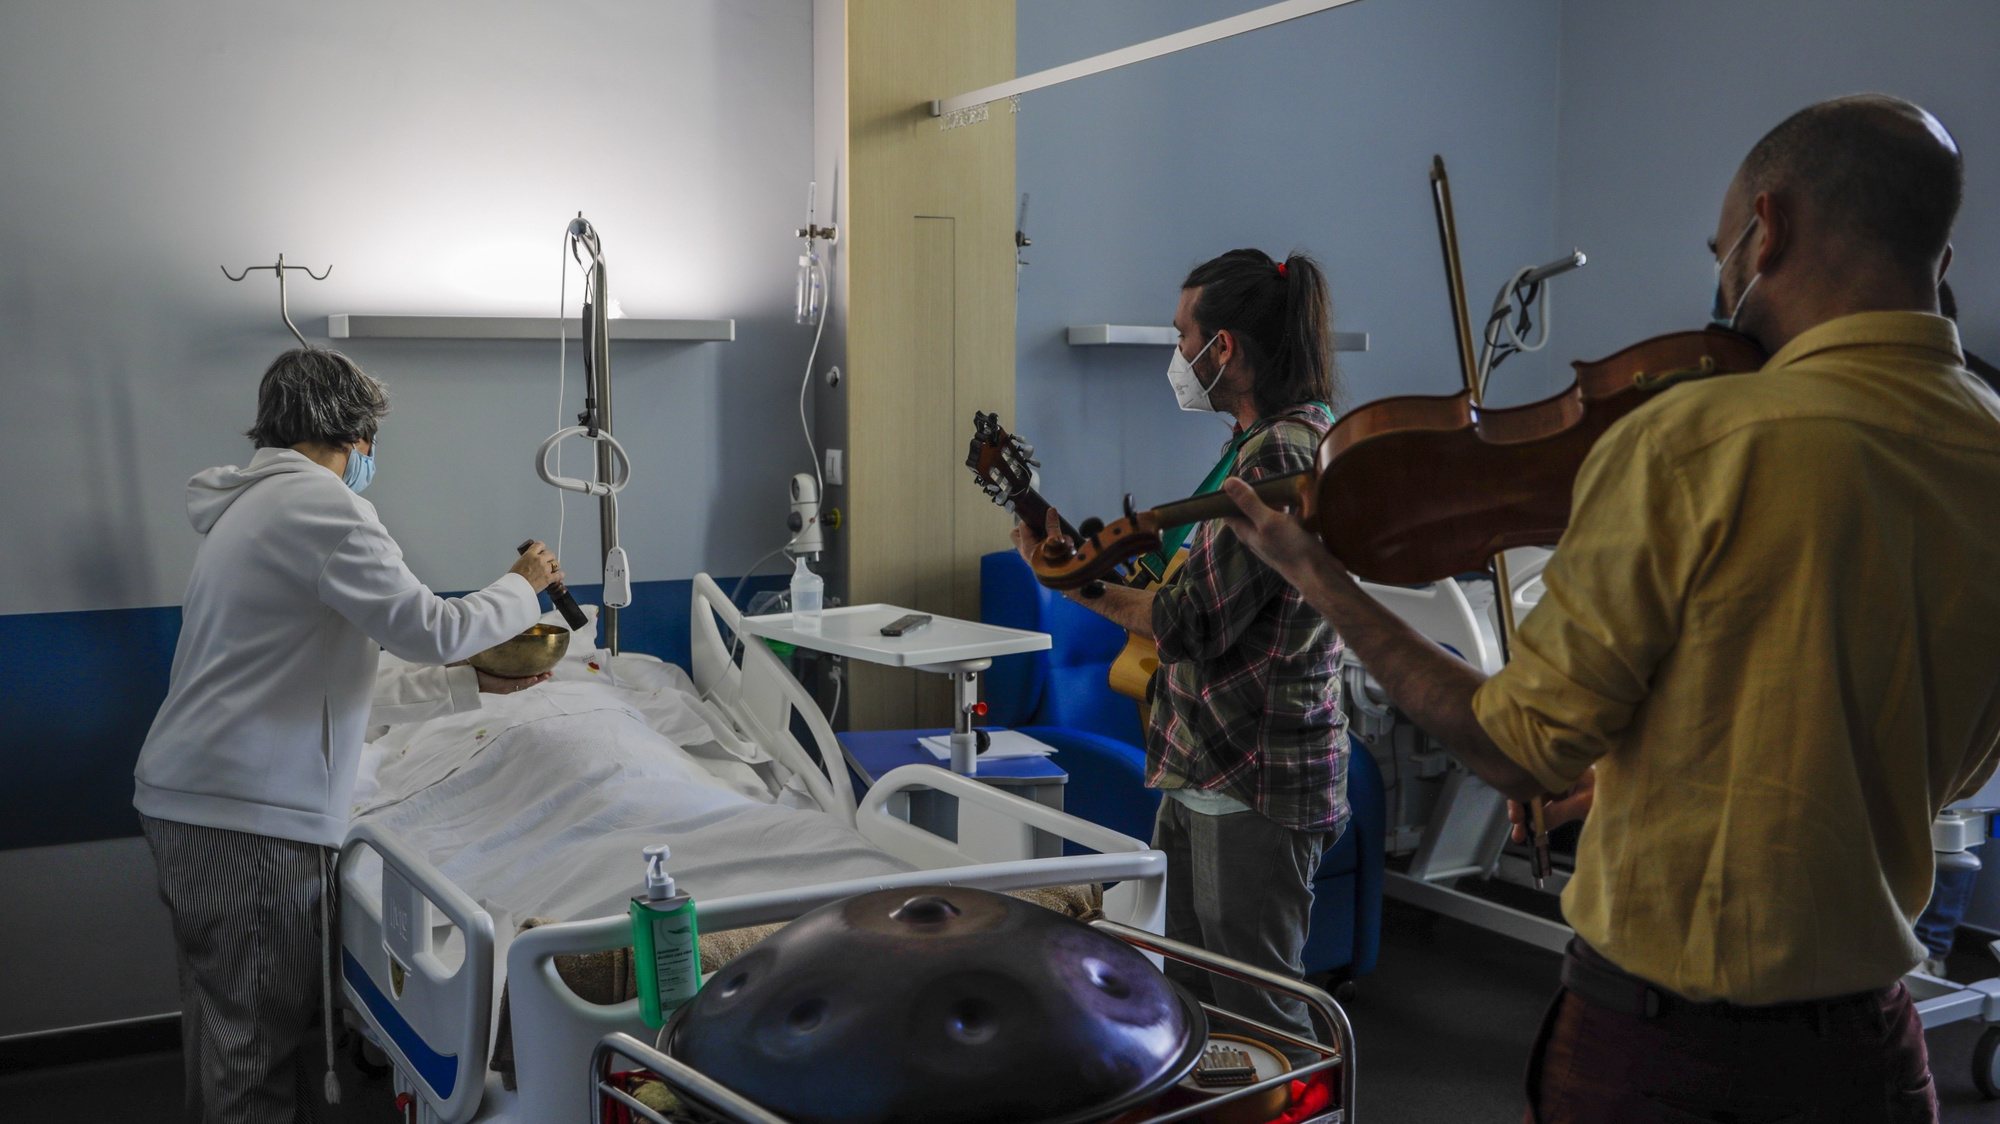 Os músicos, David Ramy (C), Humberto Giancarli (R), e Raquel Gomes (E), tocam para um utente na Unidade de Cuidados Paliativos do Hospital de Alcobaça, no âmbito do projeto &#039;Aqui contigo - O som como último colo&#039; da Sociedade Artística e Musical dos Pousos (SAMP), que leva músicos ao hospital e ao domicílio, para apoio a doentes em fim de vida em cuidados paliativos, em Alcobaça, 27 de outubro de 2022. O projeto ‘Aqui contigo - O som como último colo’ tem tido um “impacto muito positivo” nos doentes e até nos profissionais de saúde da Unidade de Internamento dos Cuidados Paliativos do Centro Hospitalar de Leiria. (ACOMPANHA TEXTO DA LUSA DO DIA 05 DE NOVEMBRO DE 2022). PAULO CUNHA/LUSA